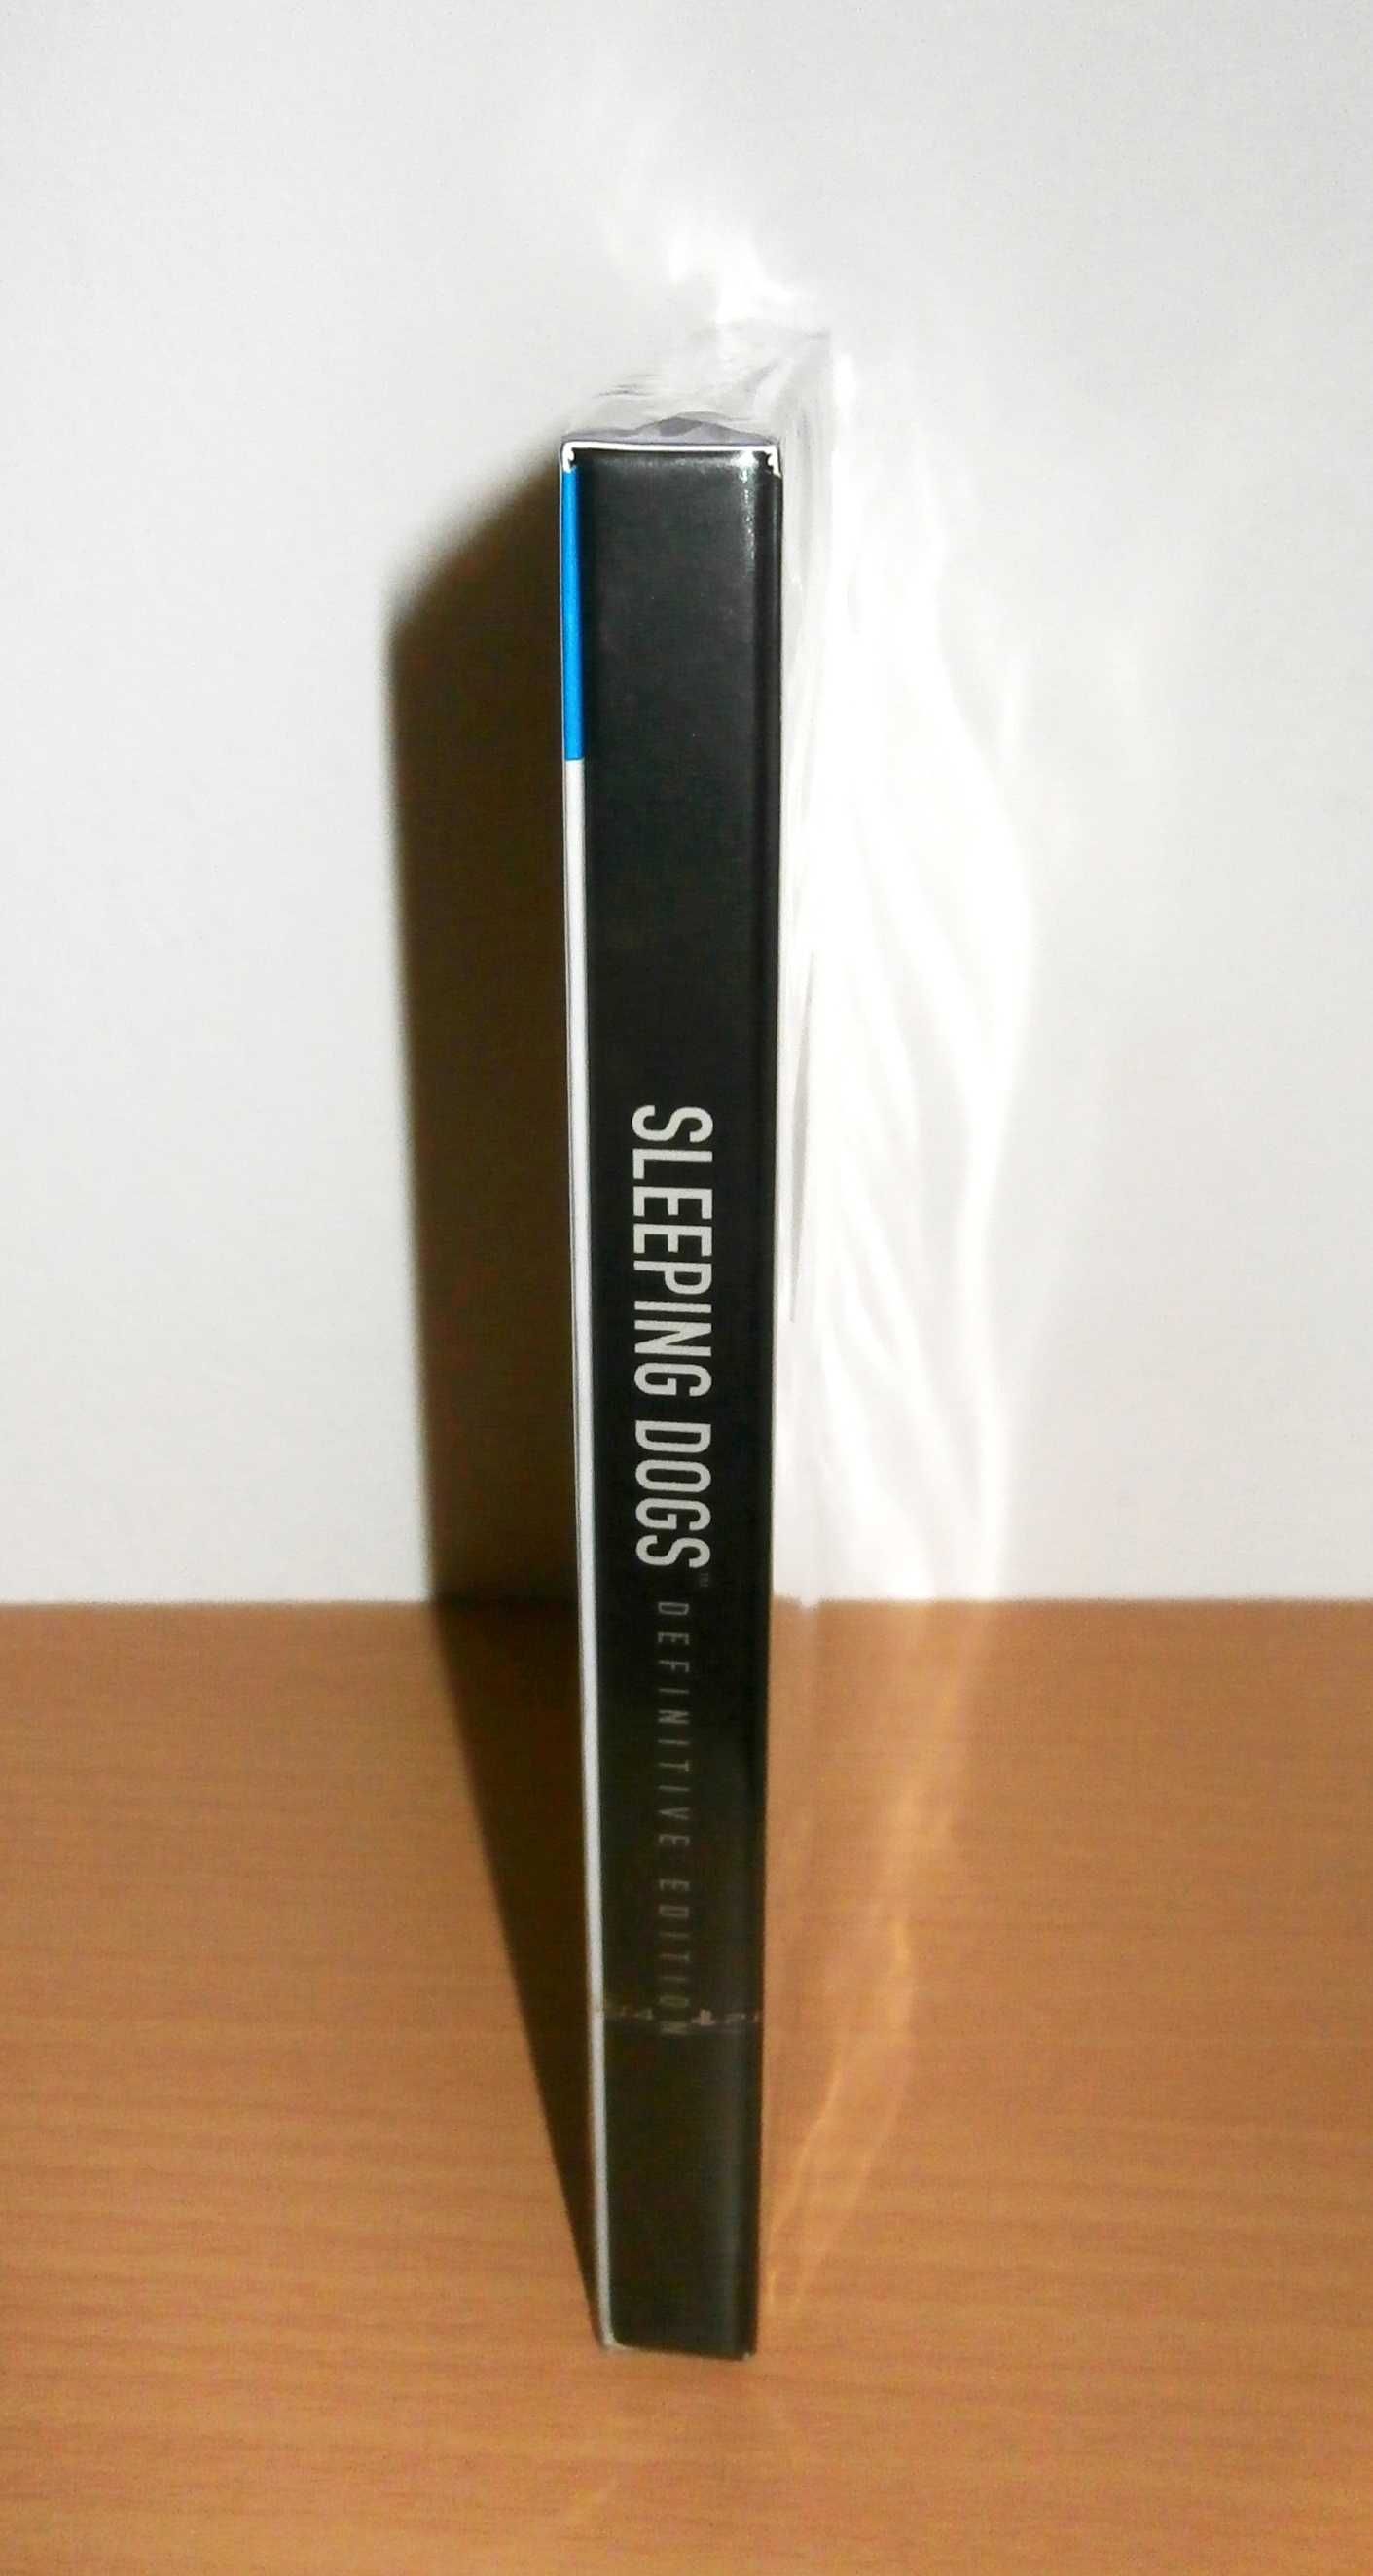 Editie de colectie - Sleeping Dogs Definitive Edition, rara, sigilata